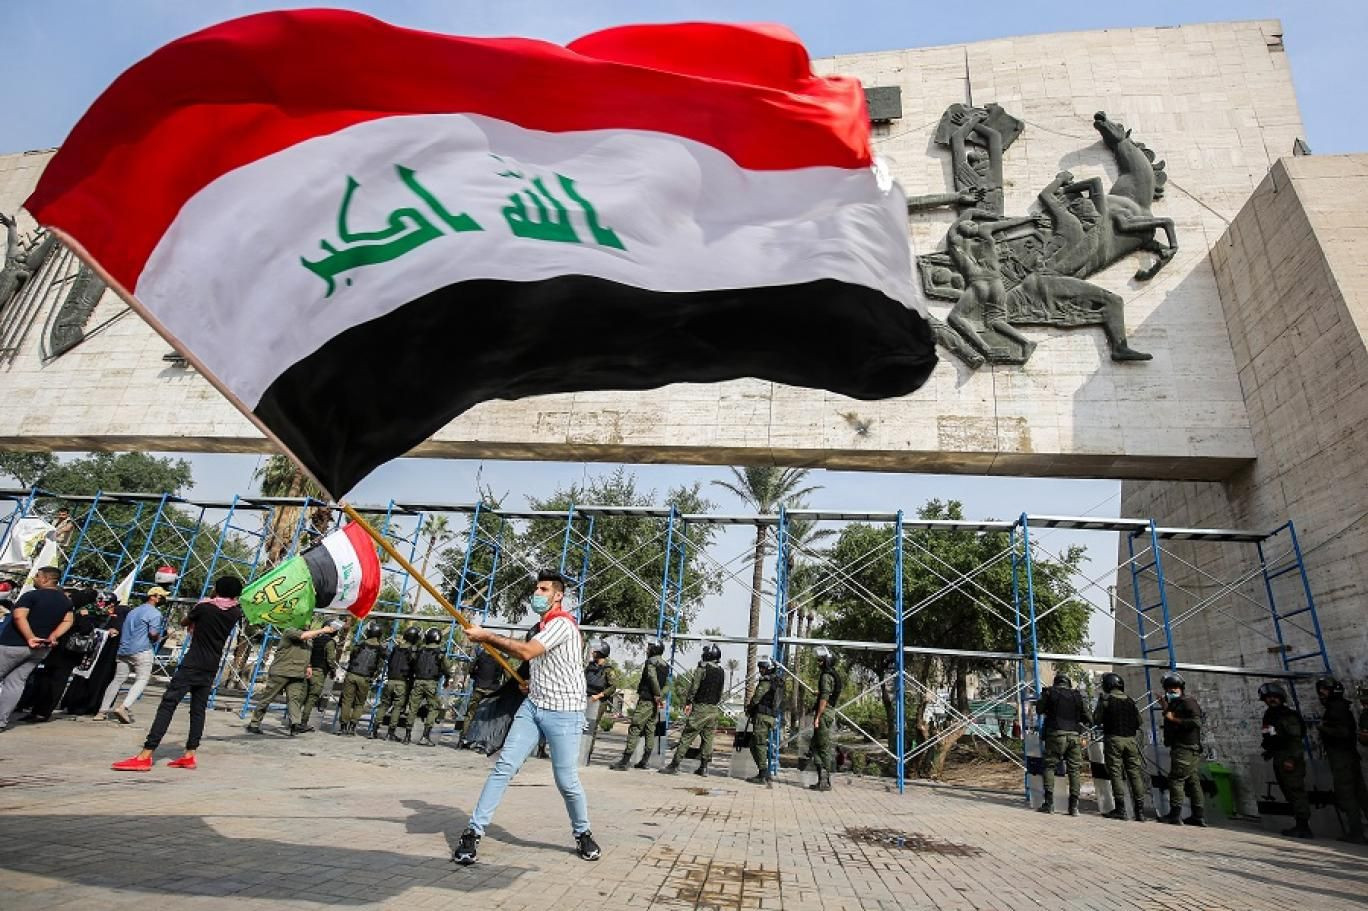 تحالف عراقي يدعو لحوار سياسي واجتماعي لحل الأزمة السياسية الراهنة